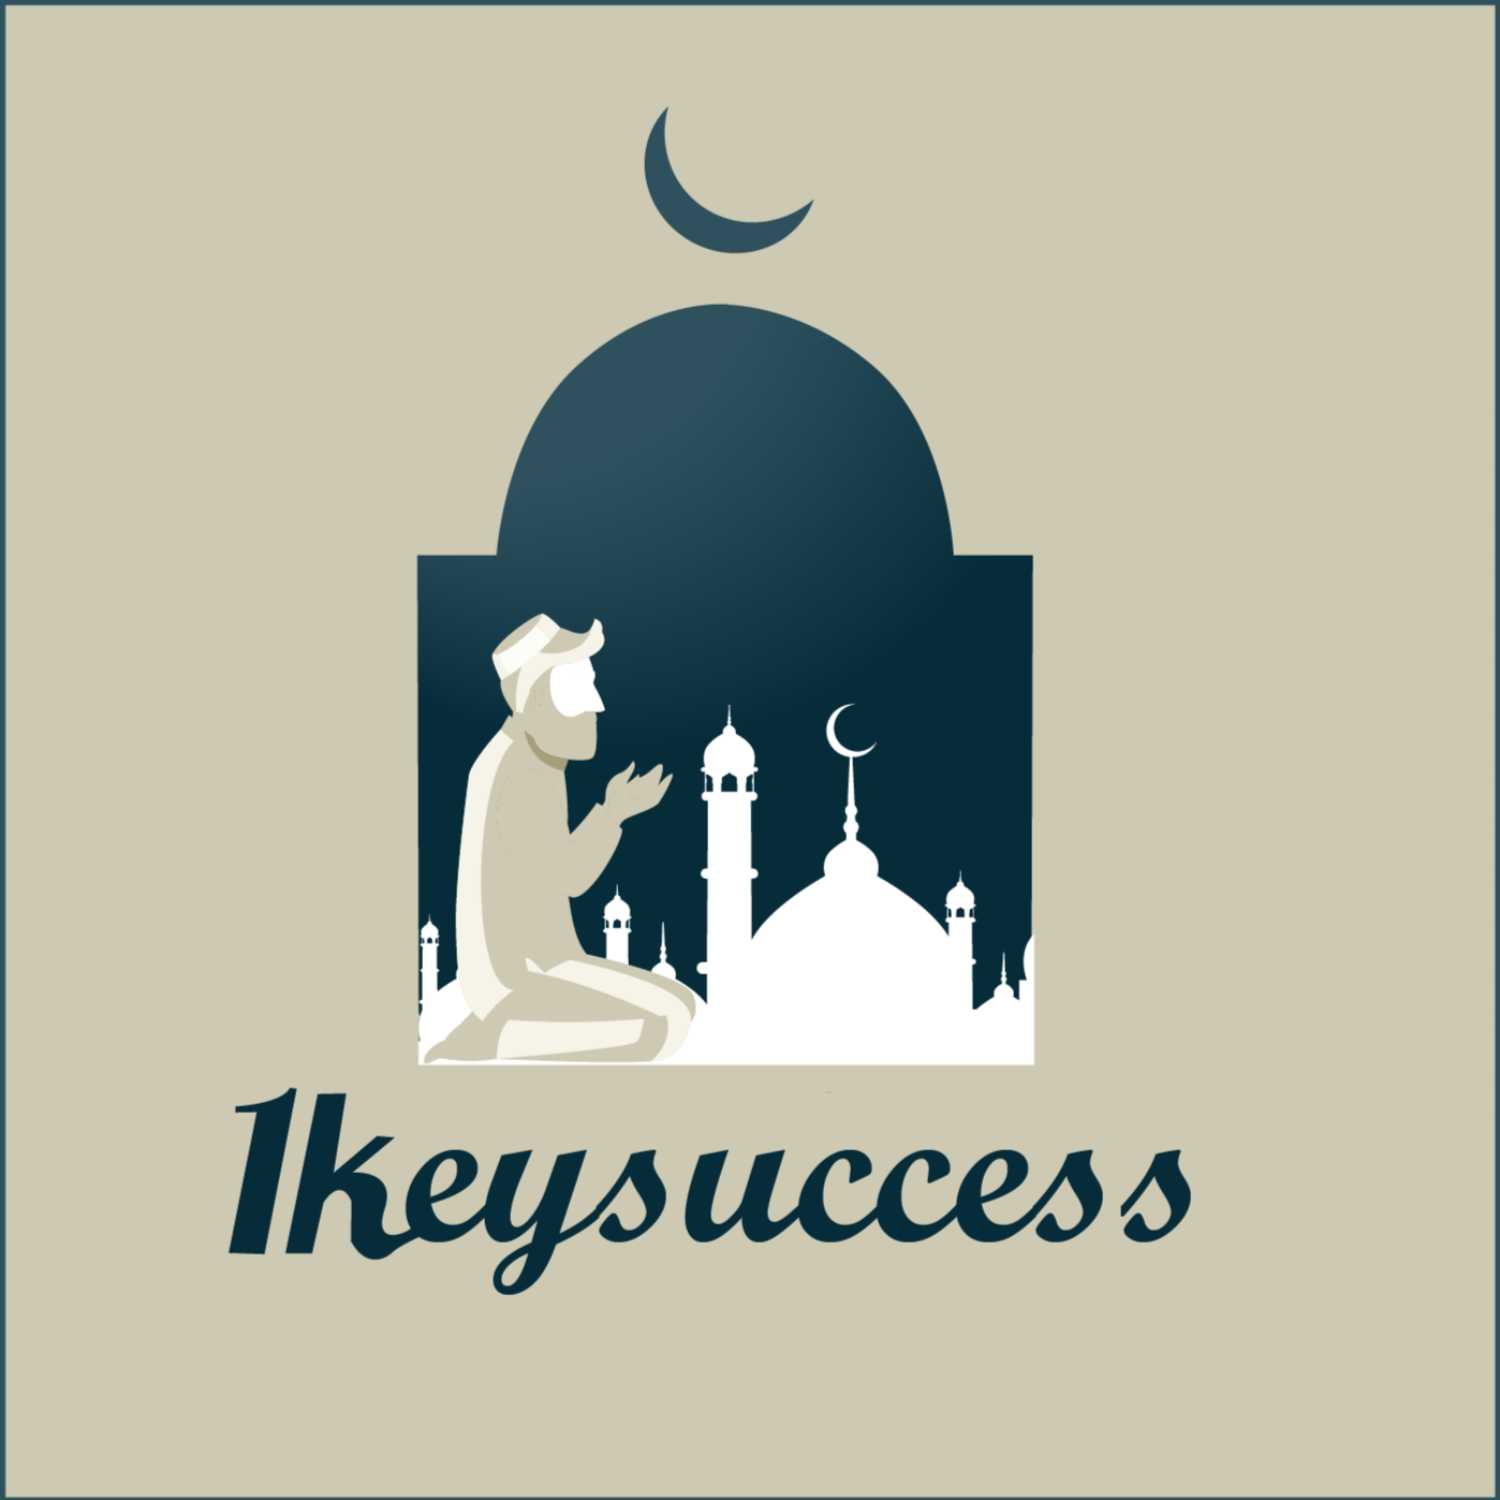 1 key success